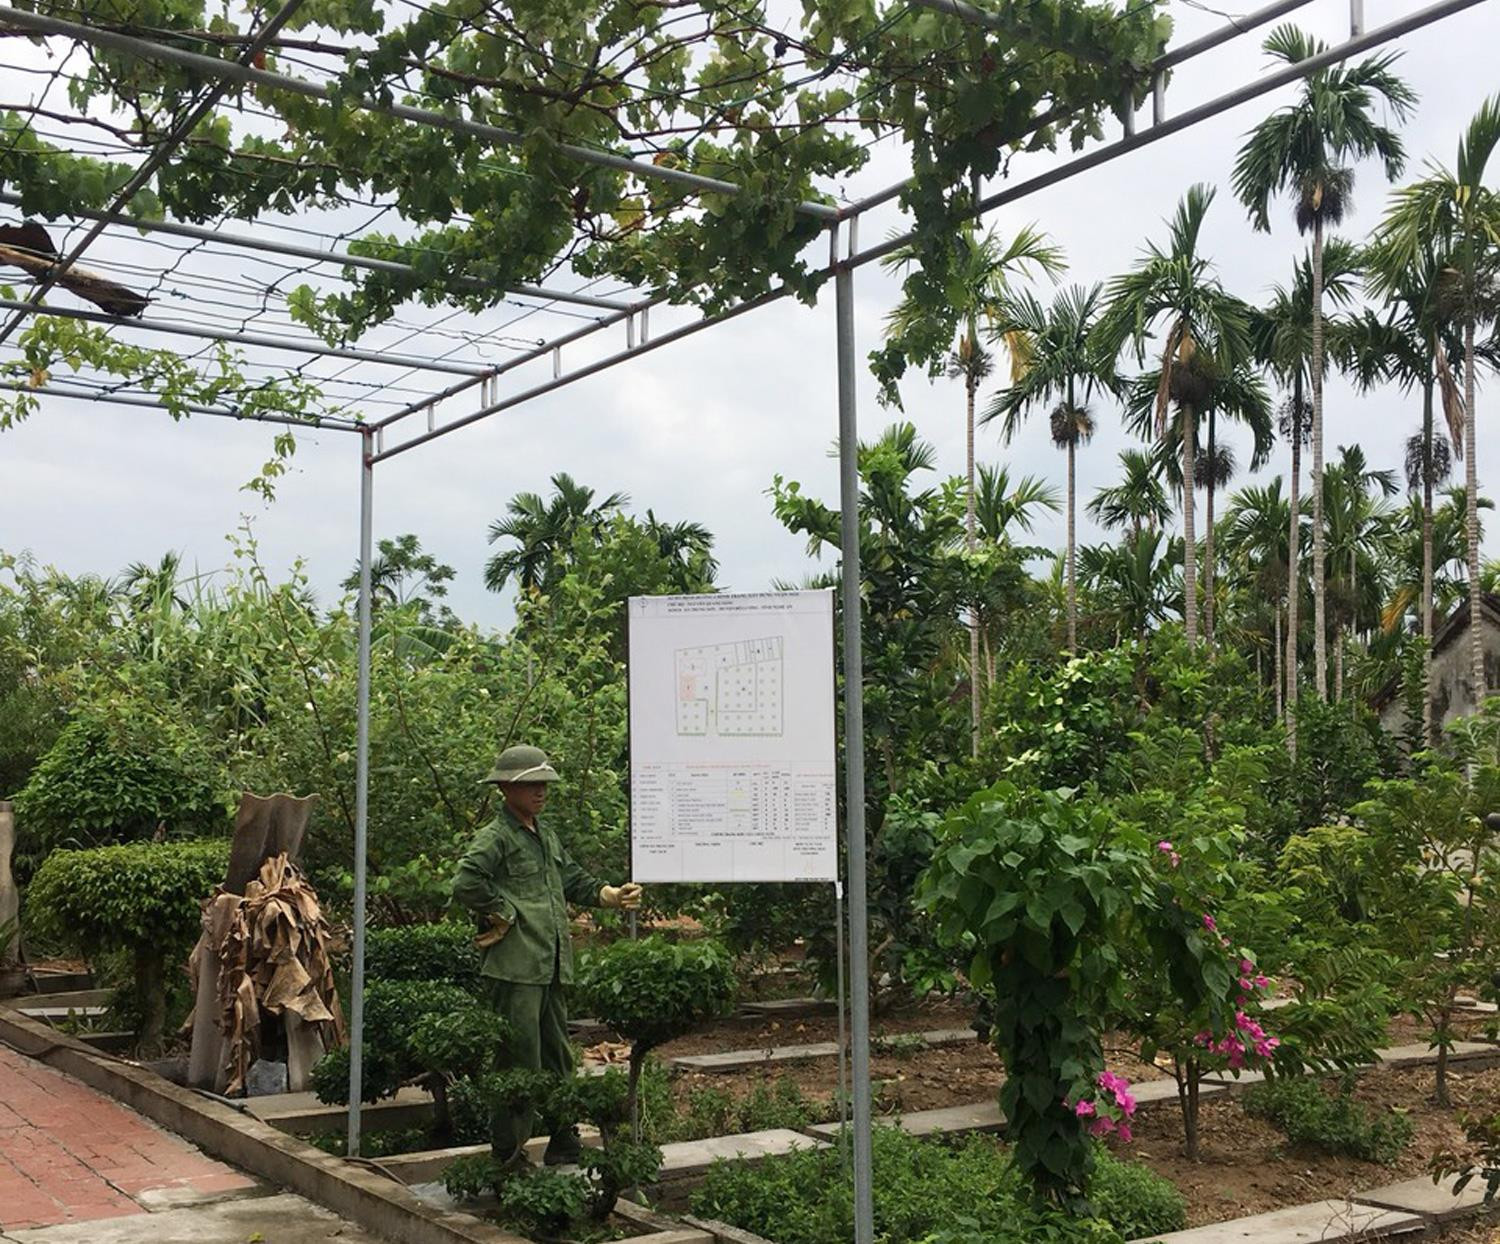 Xây dựng vườn mẫu trong xây dựng nông thôn mới ở Đô Lương. Ảnh: Mai Hoa